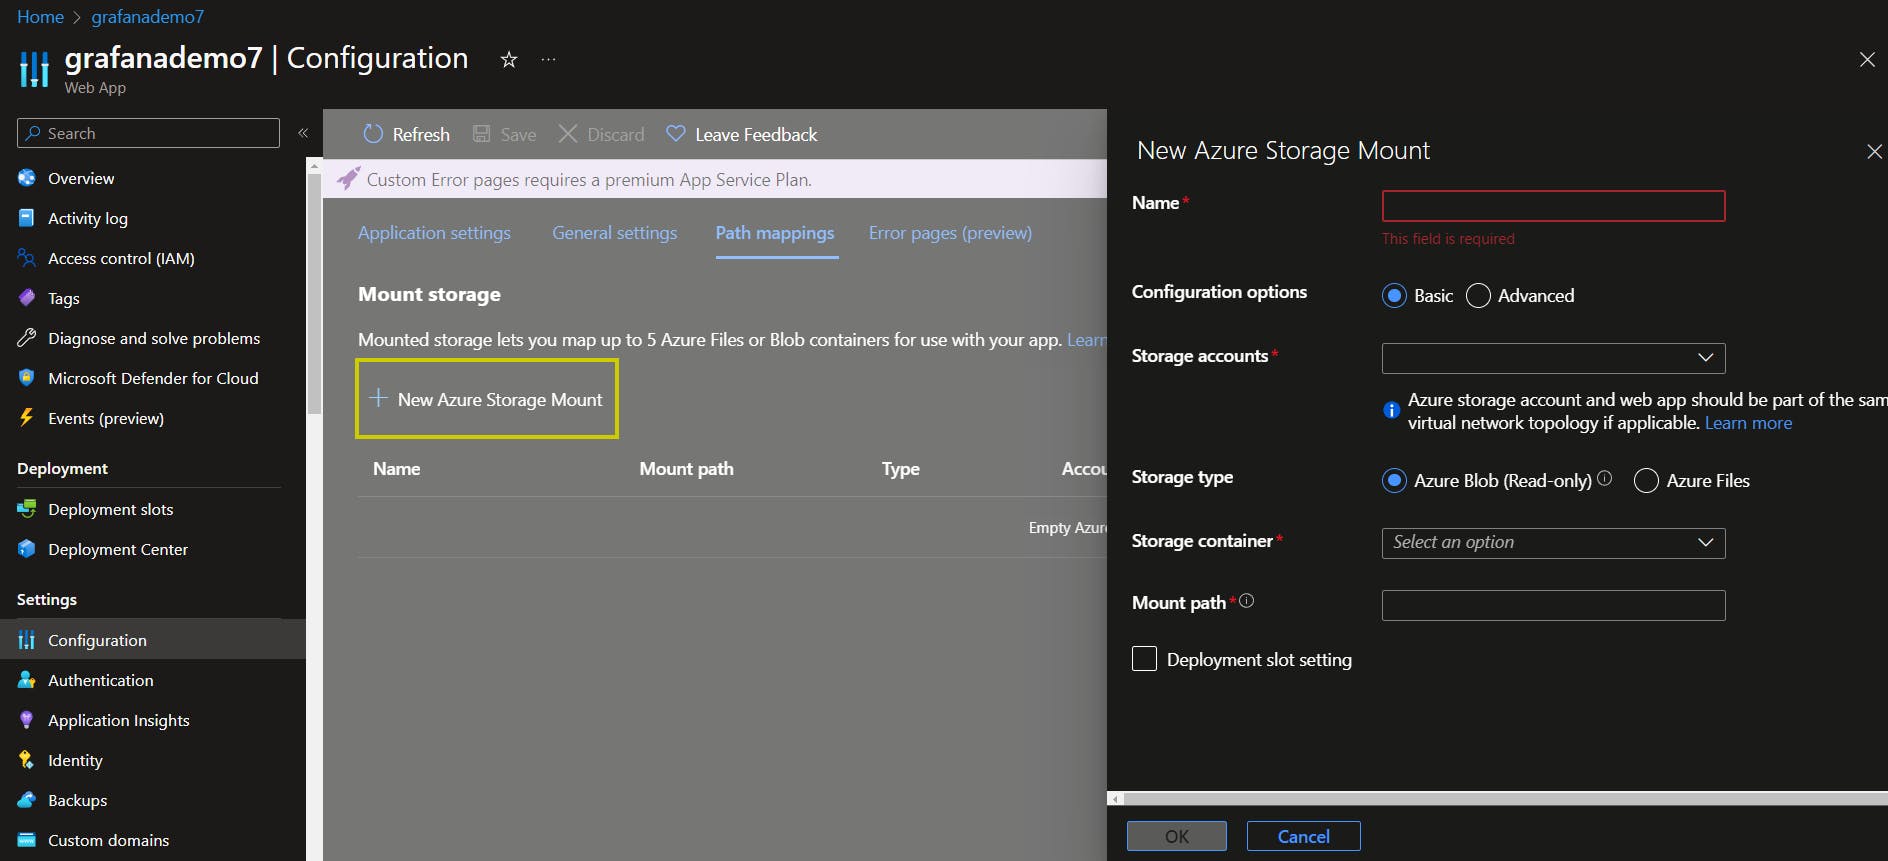 Azure Web App configuration: adding New Azure Storage Mount